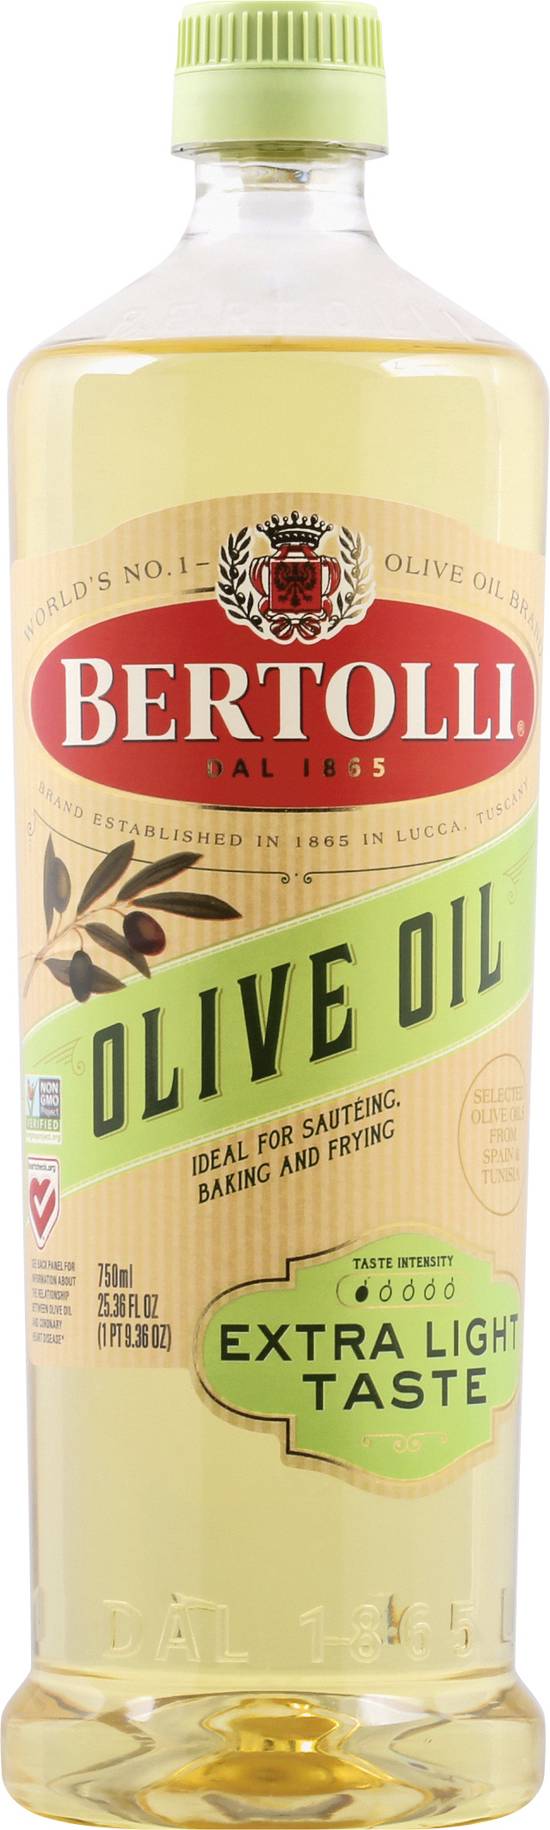 Bertolli Extra Light Taste Olive Oil